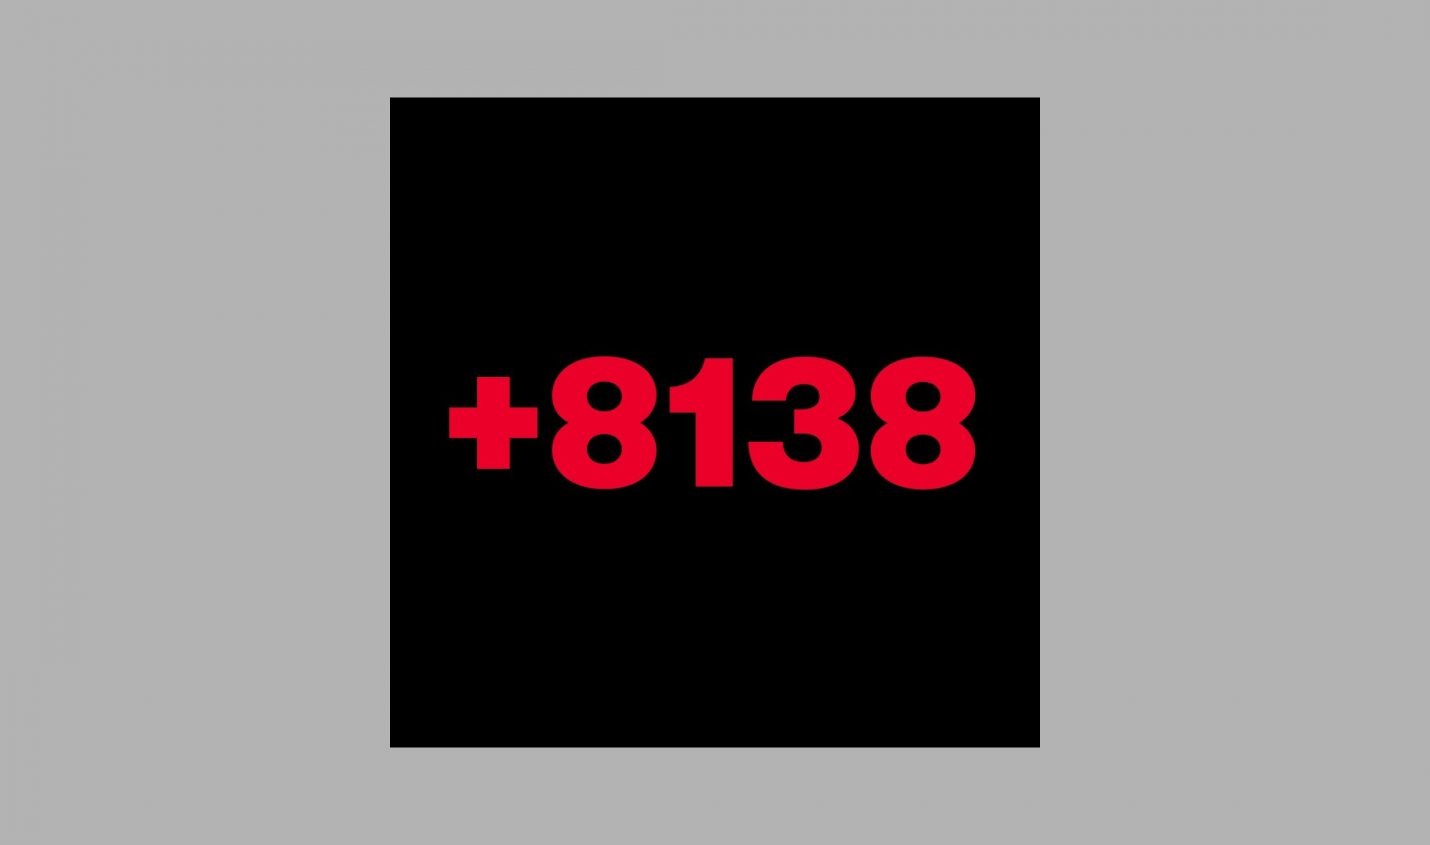 +8138: Richie Hawtin´s Label Plus 8 bringt neue Compilation heraus